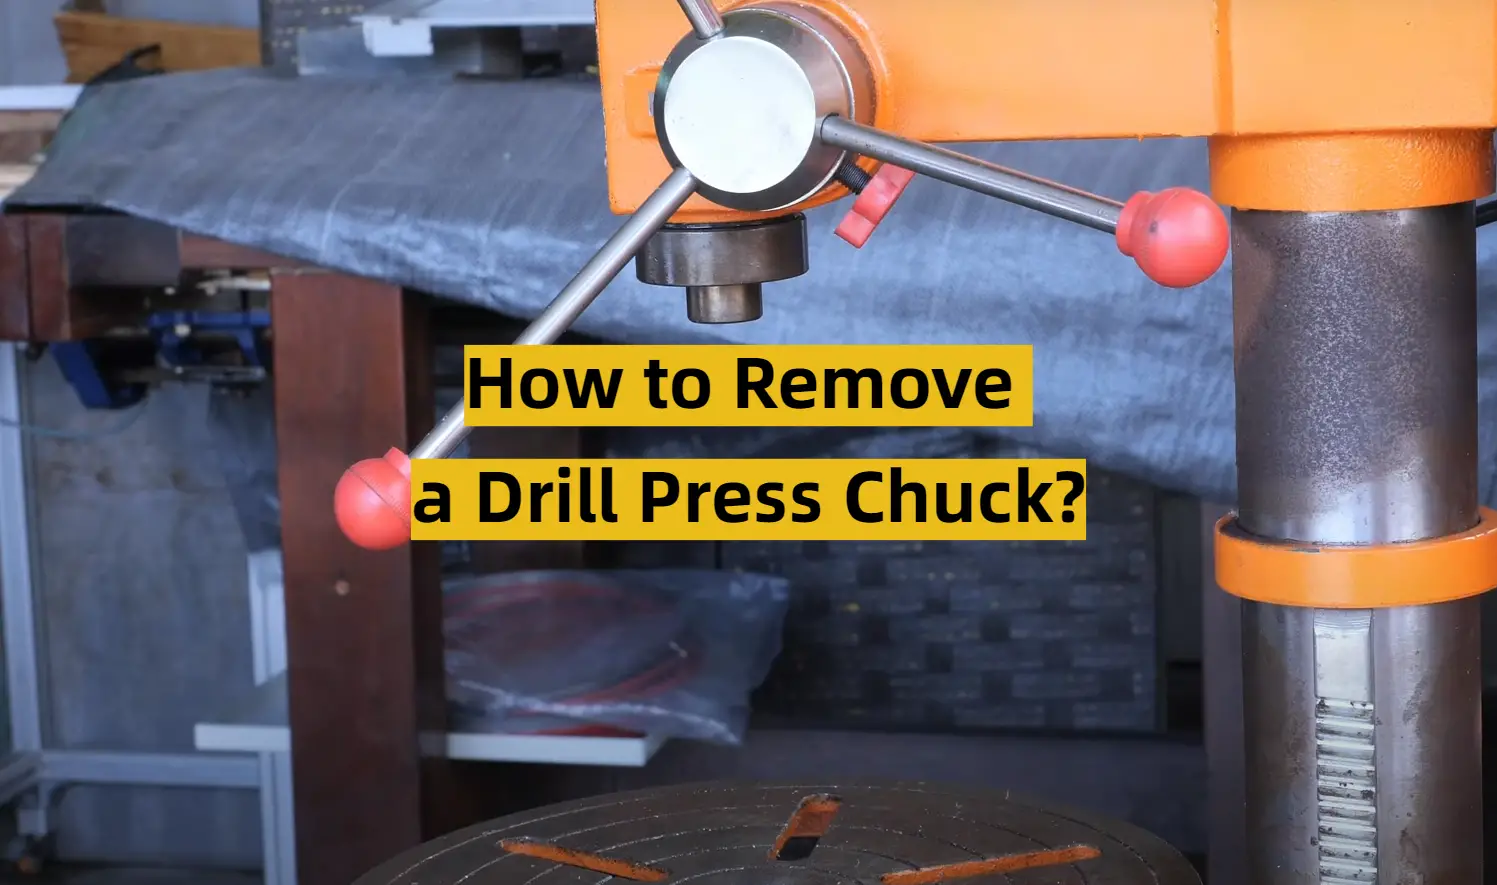 How to Remove a Drill Press Chuck?